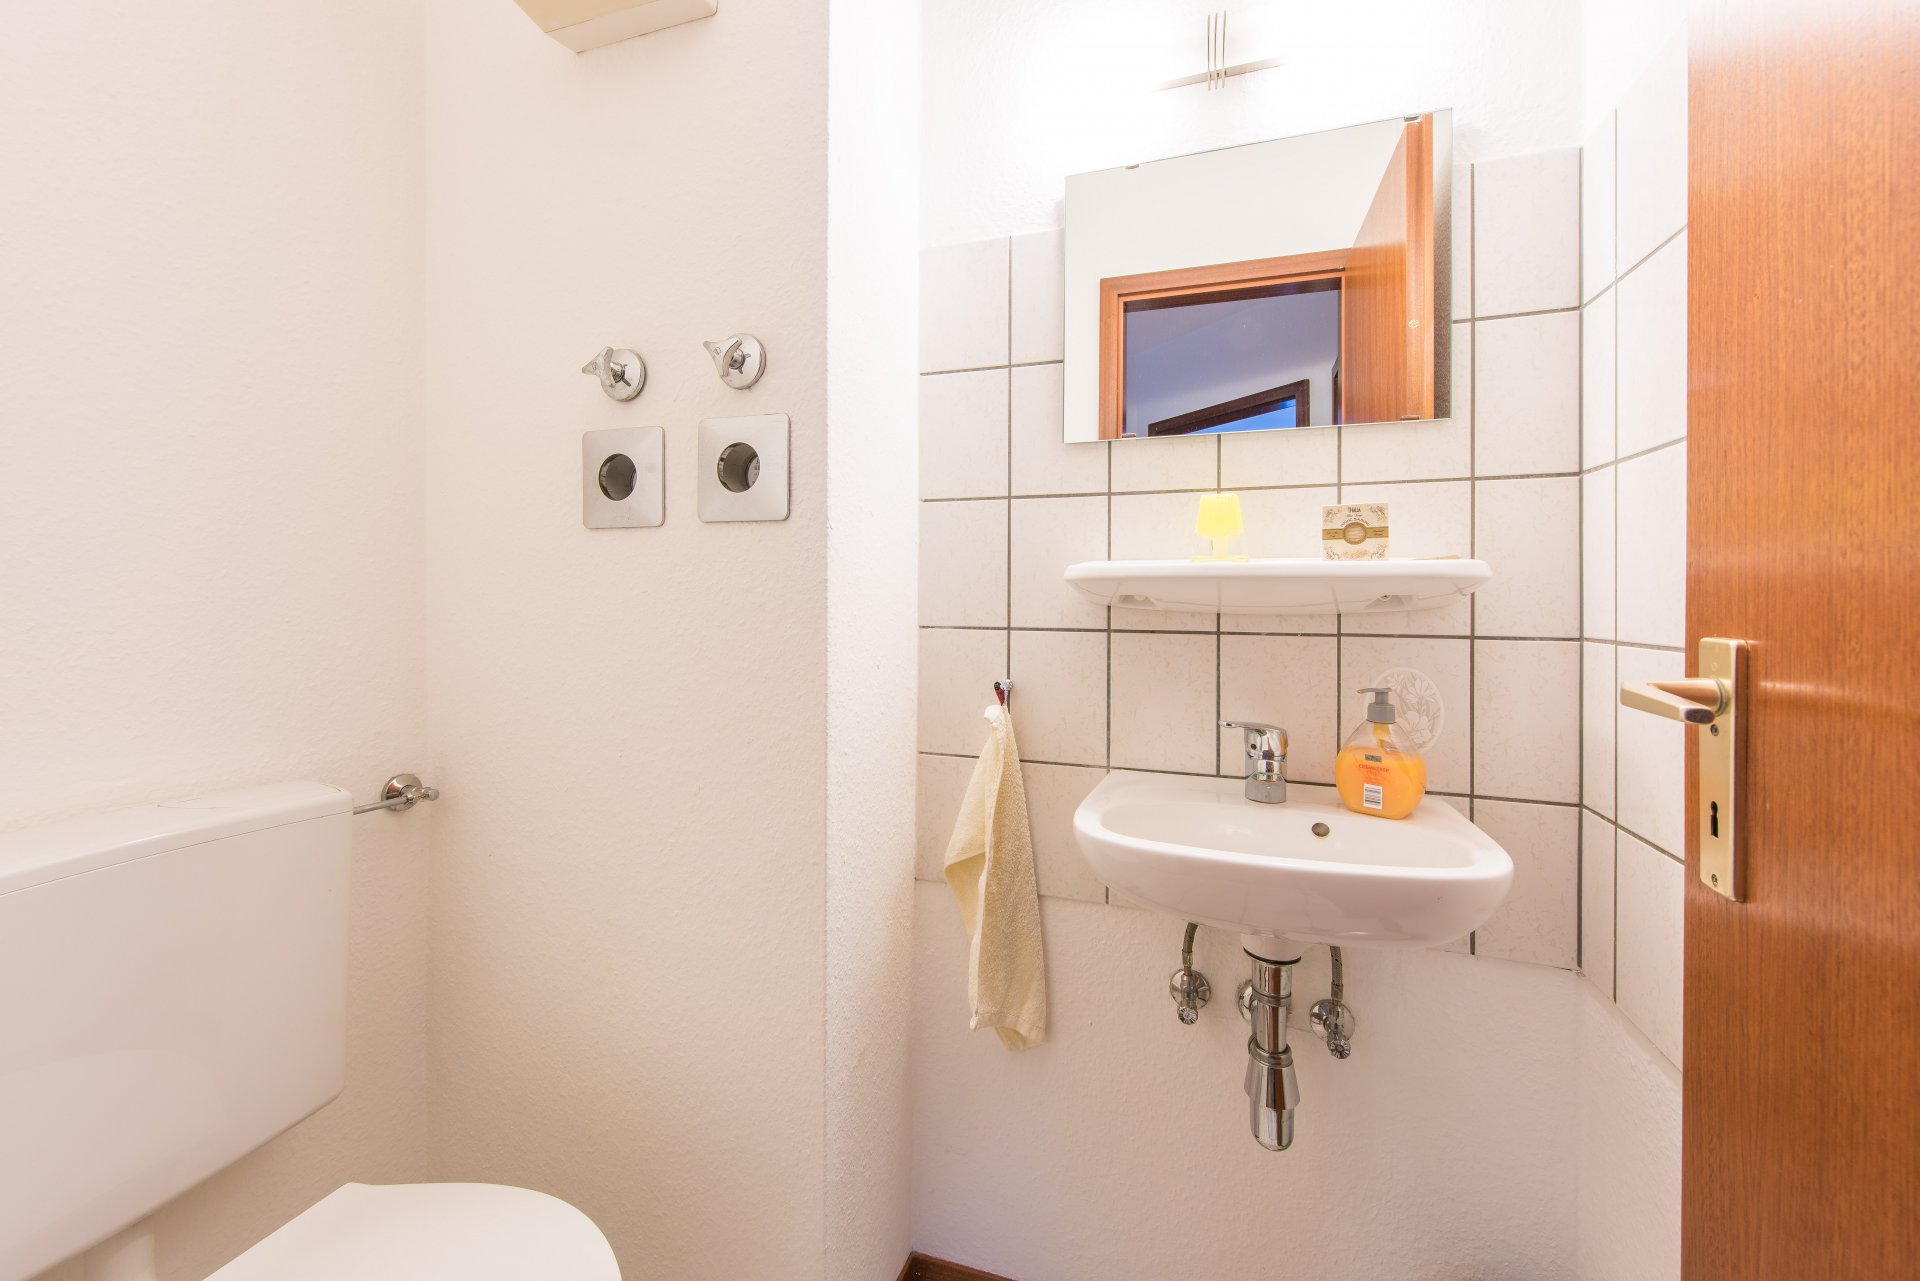 Gäste WC mit Wasserzählern für Kalt und Warm - Oliver Reifferscheid - Immobilienmakler Darmstadt